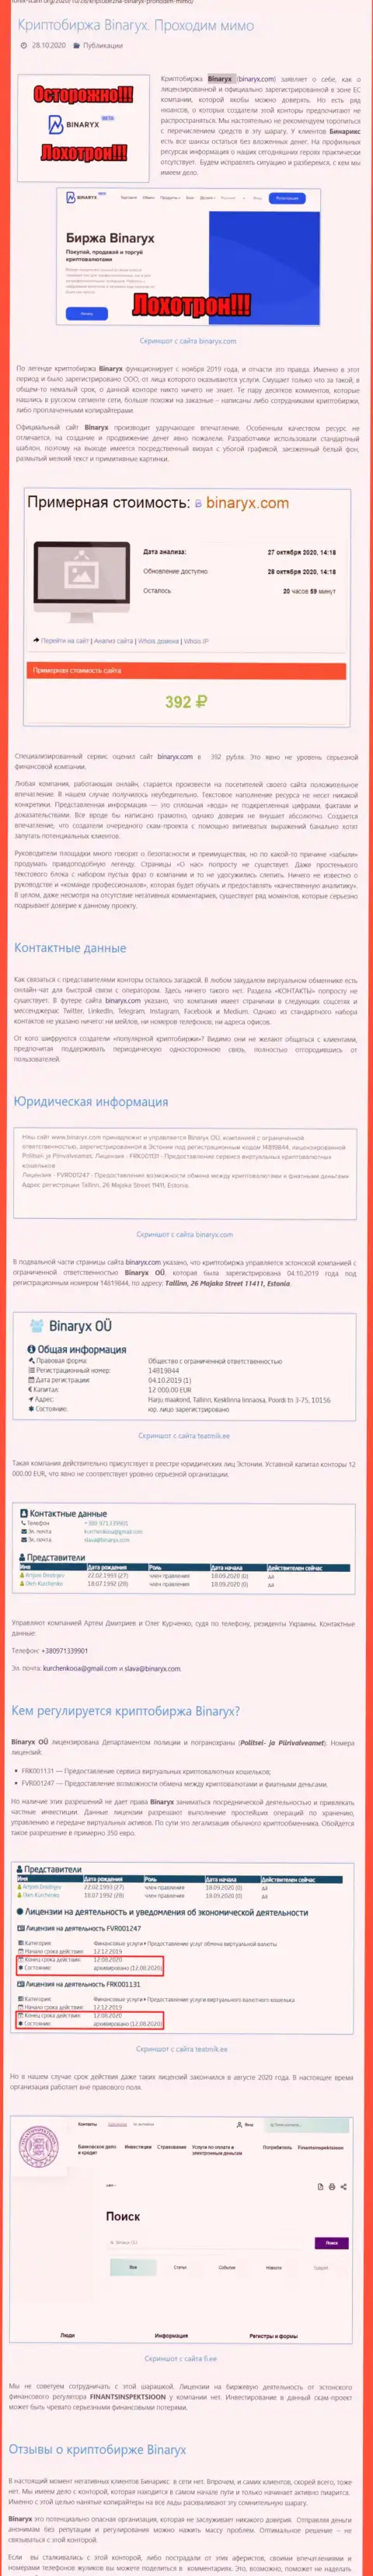 Binaryx Com - это ШУЛЕРА !!! Отжатие финансовых средств гарантируют стопроцентно (обзор организации)